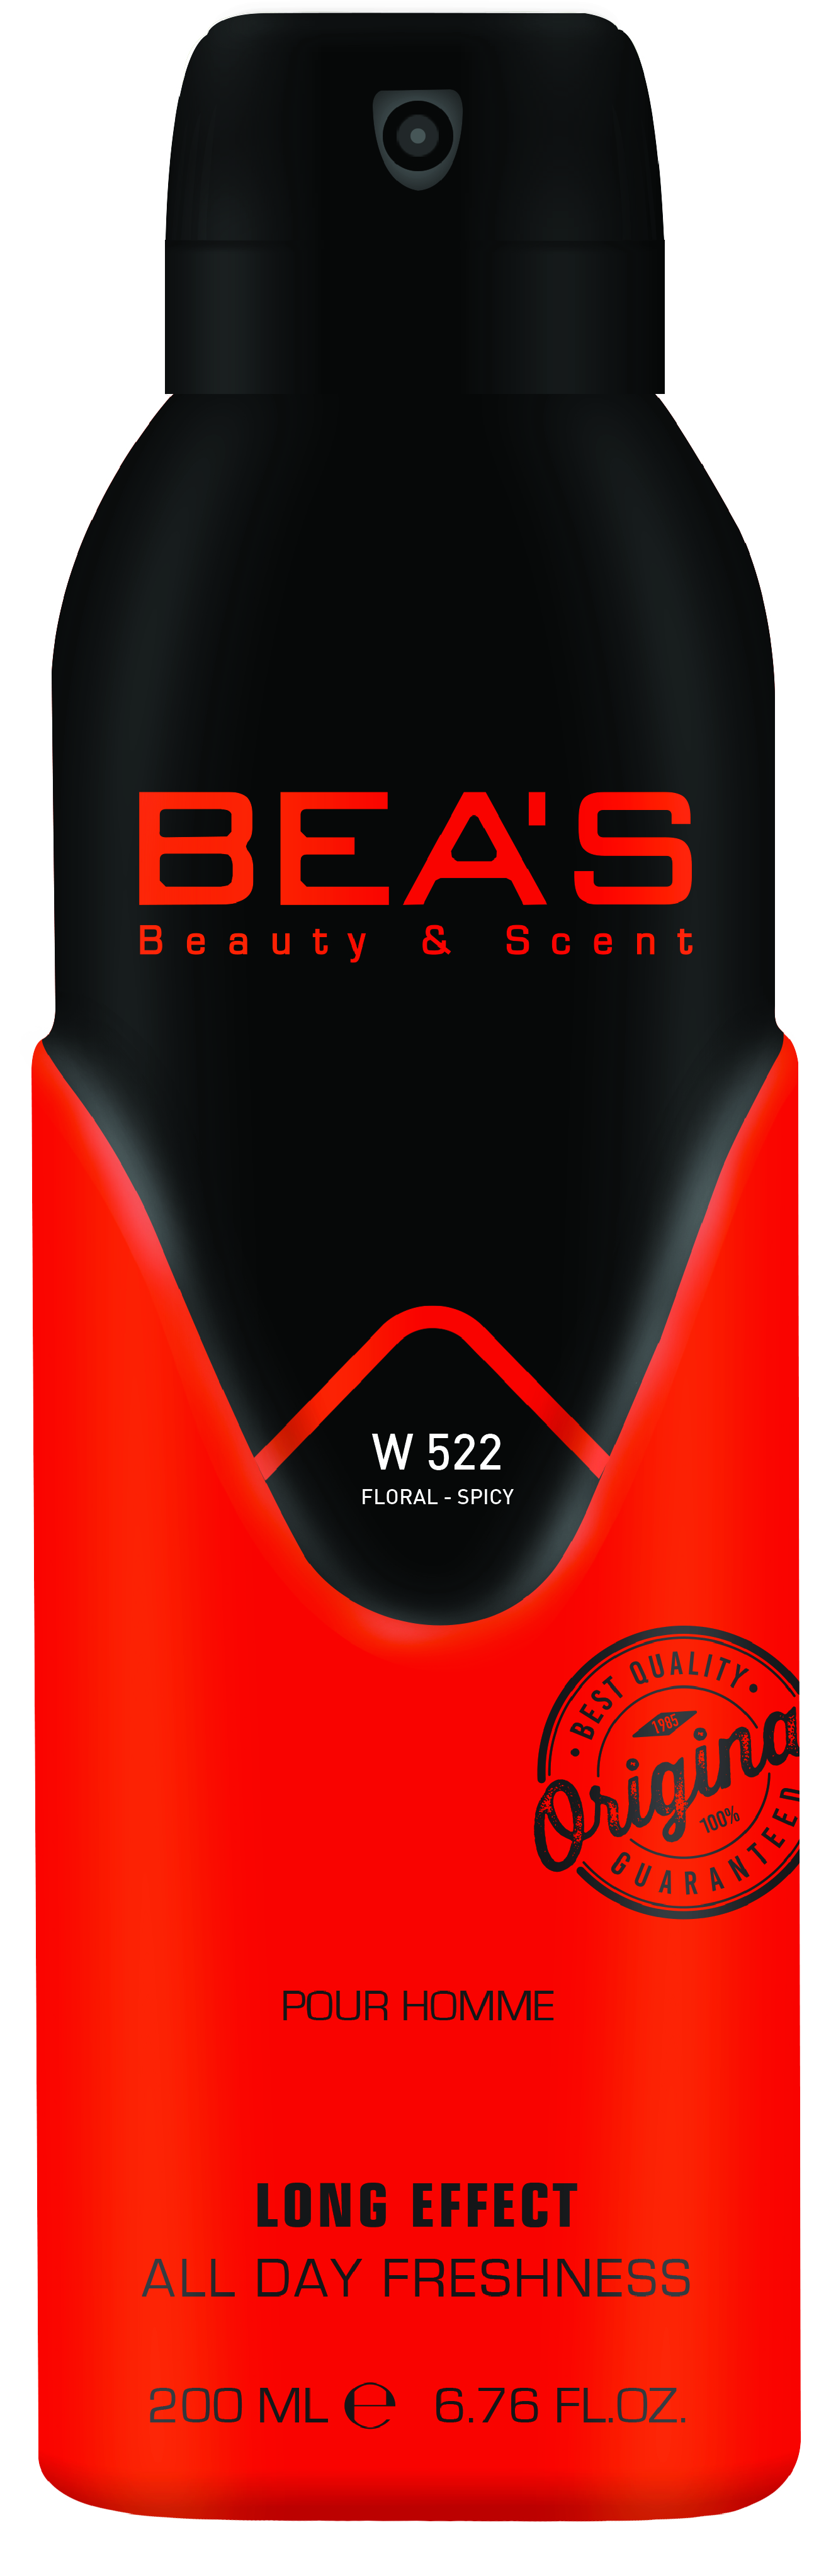 Купить Парфюмированный дезодорант Beas Roses Musk Woman 200 мл W 522, Номерная парфюмерия